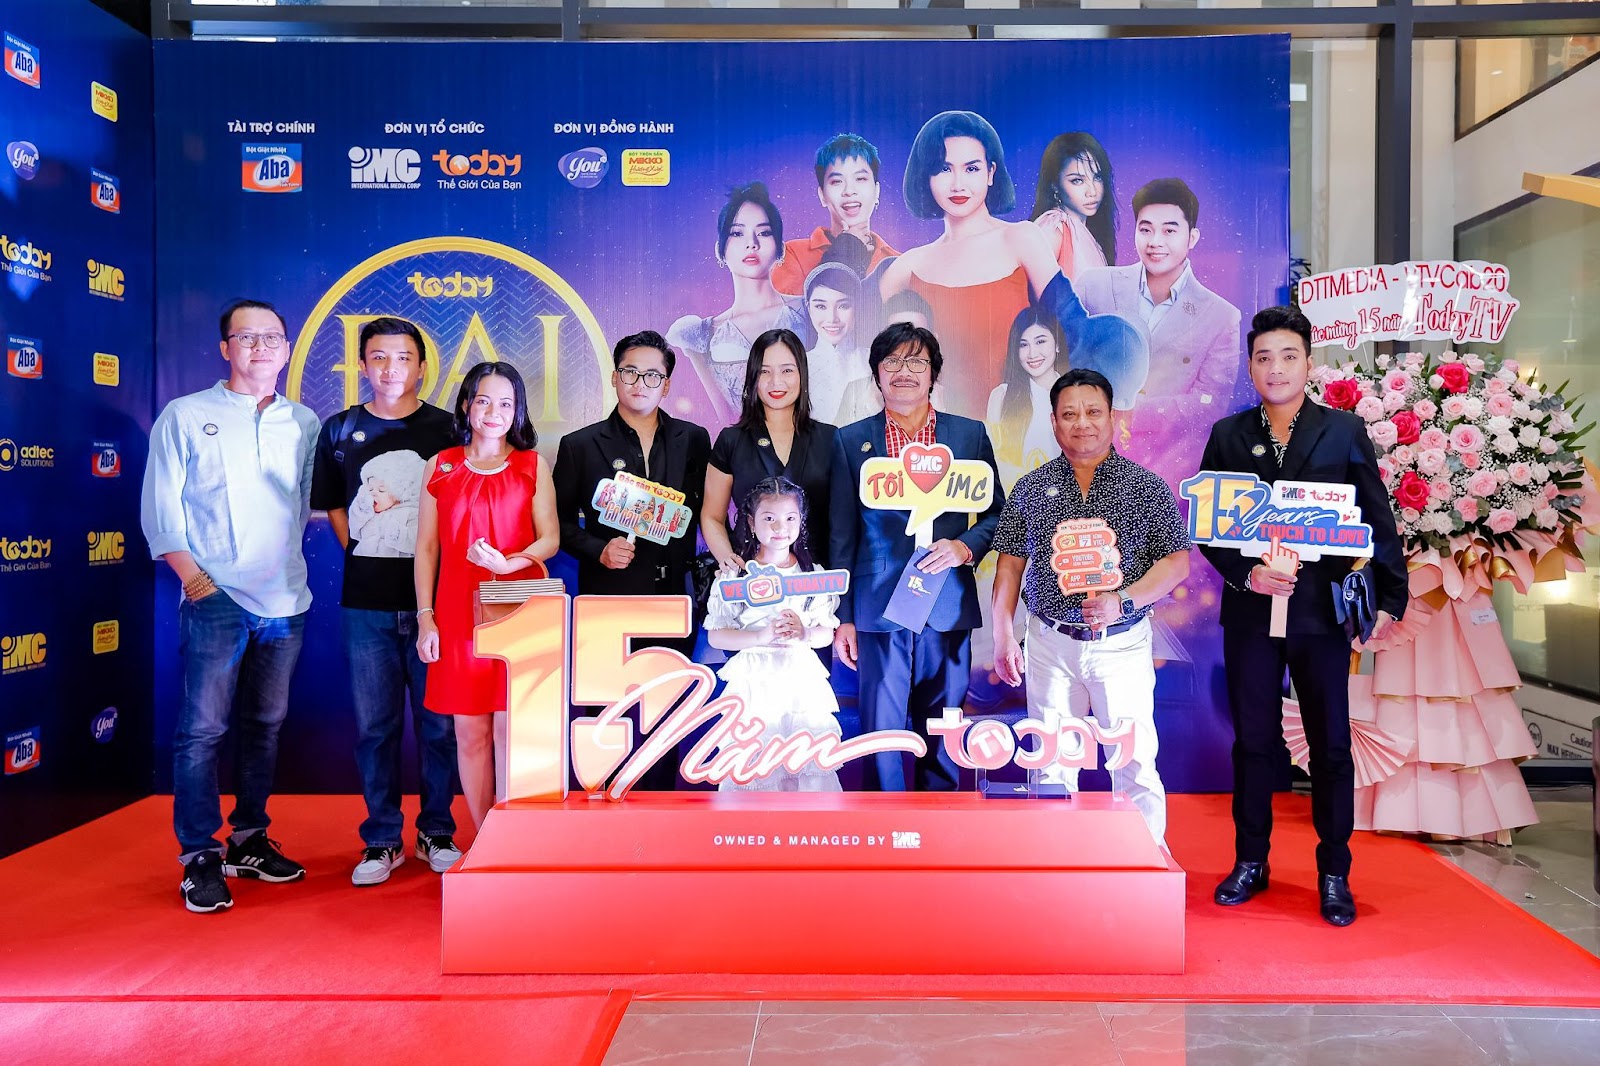  Helly Shah và Avika Gor khoe sắc cùng dàn sao Việt tại thảm đỏ Đại Nhạc Hội TodayTV